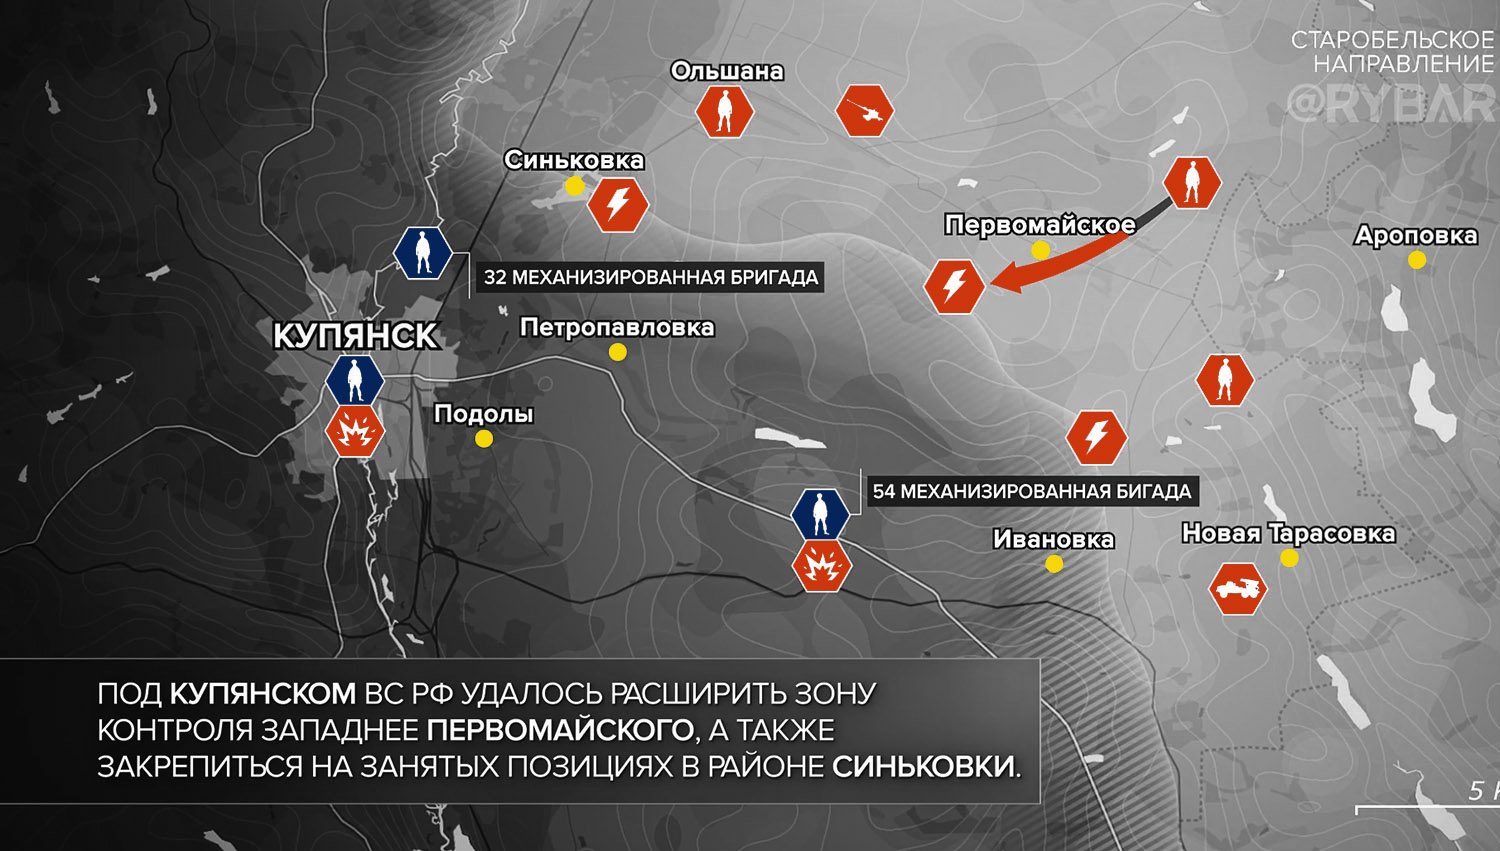 Карта боевых действий на Украине, Старобельское направление, к утру 12.11.23 г. Карта СВО от «Рыбарь».